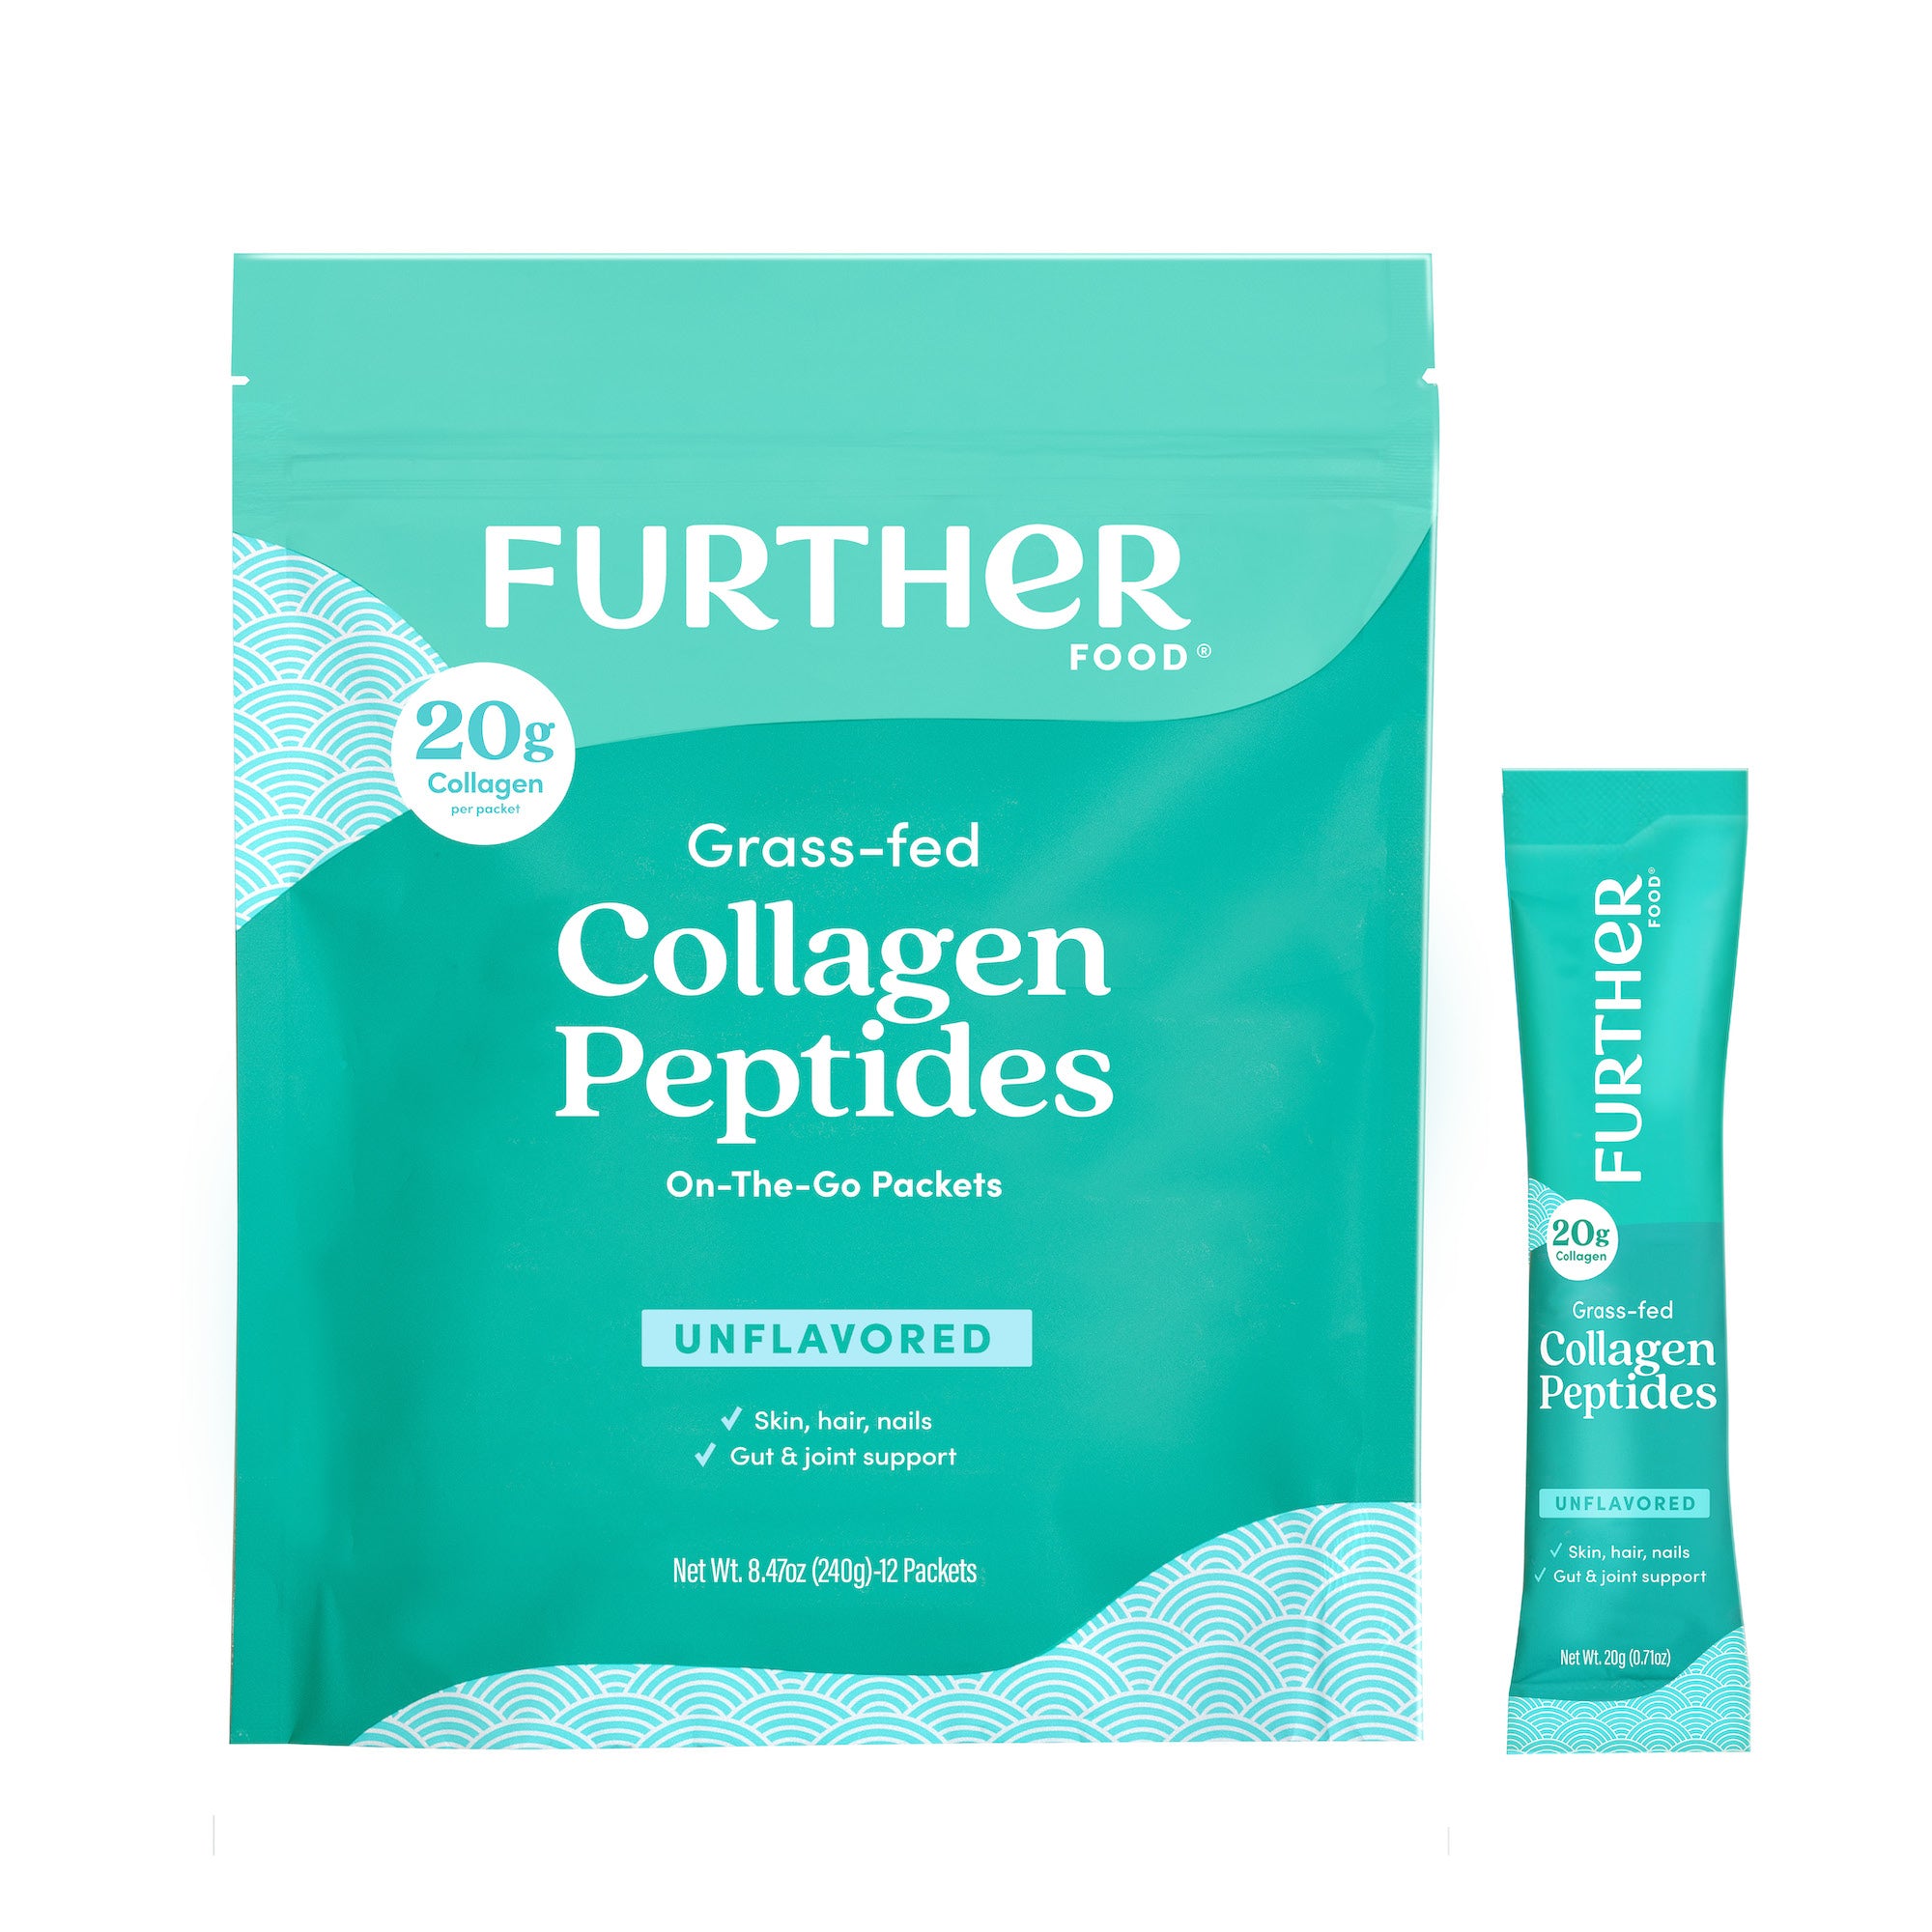 Unflavored Collagen Peptides Powder